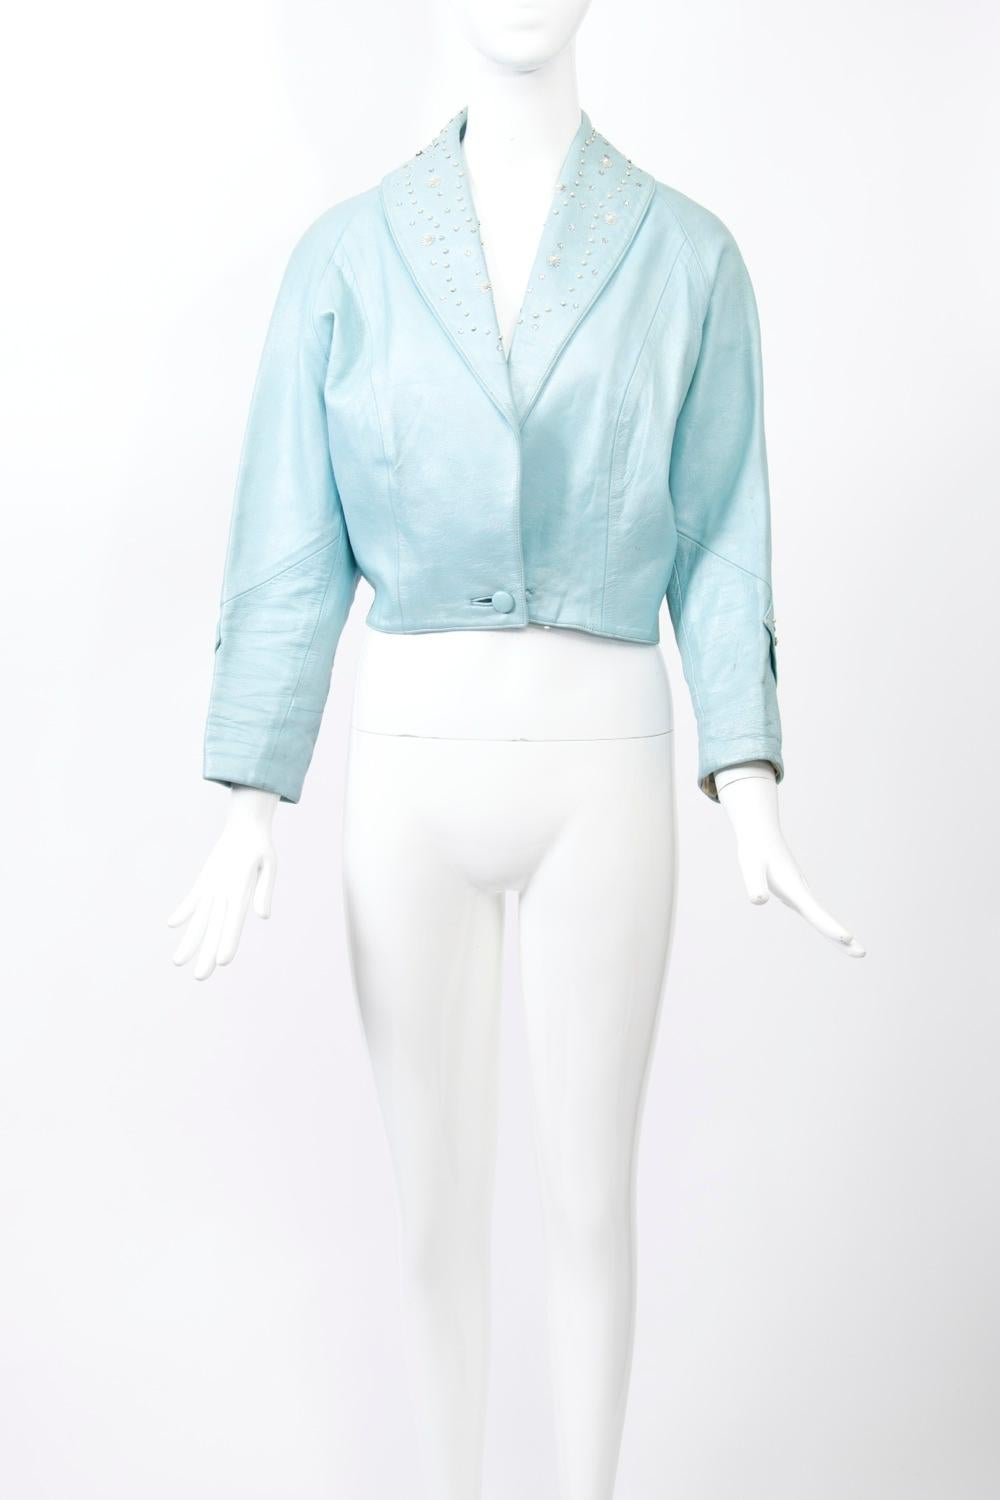 veste cintrée des années 1950 en cuir bleu nacré, son col châle est constellé de perles et de strass, tout comme une bande sous le coude des manches raglan. Bouton unique à la taille. Dos long et incurvé avec de légères fentes sur les côtés.